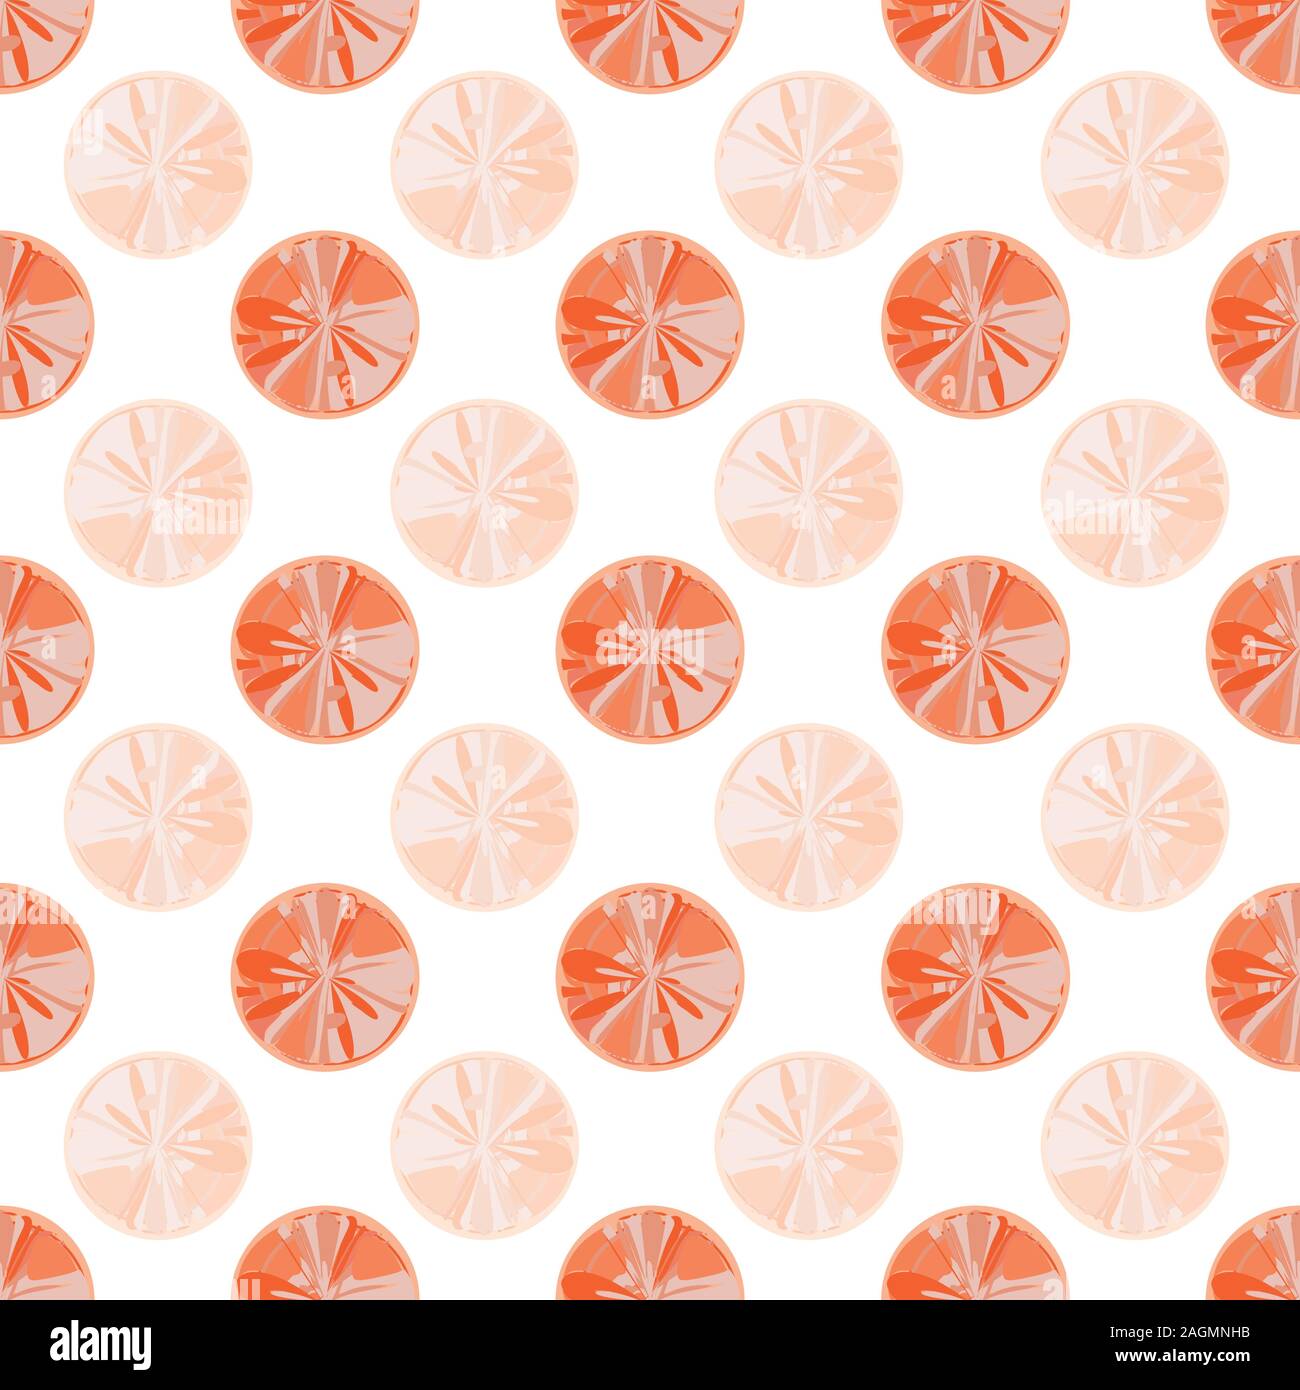 Texturierte Farbe Pastell rosa und orange Kreise, ähnlich Scheiben von Grapefruit. Die nahtlose Vektor geometrische Muster auf weißem Hintergrund. Ideal für Stock Vektor